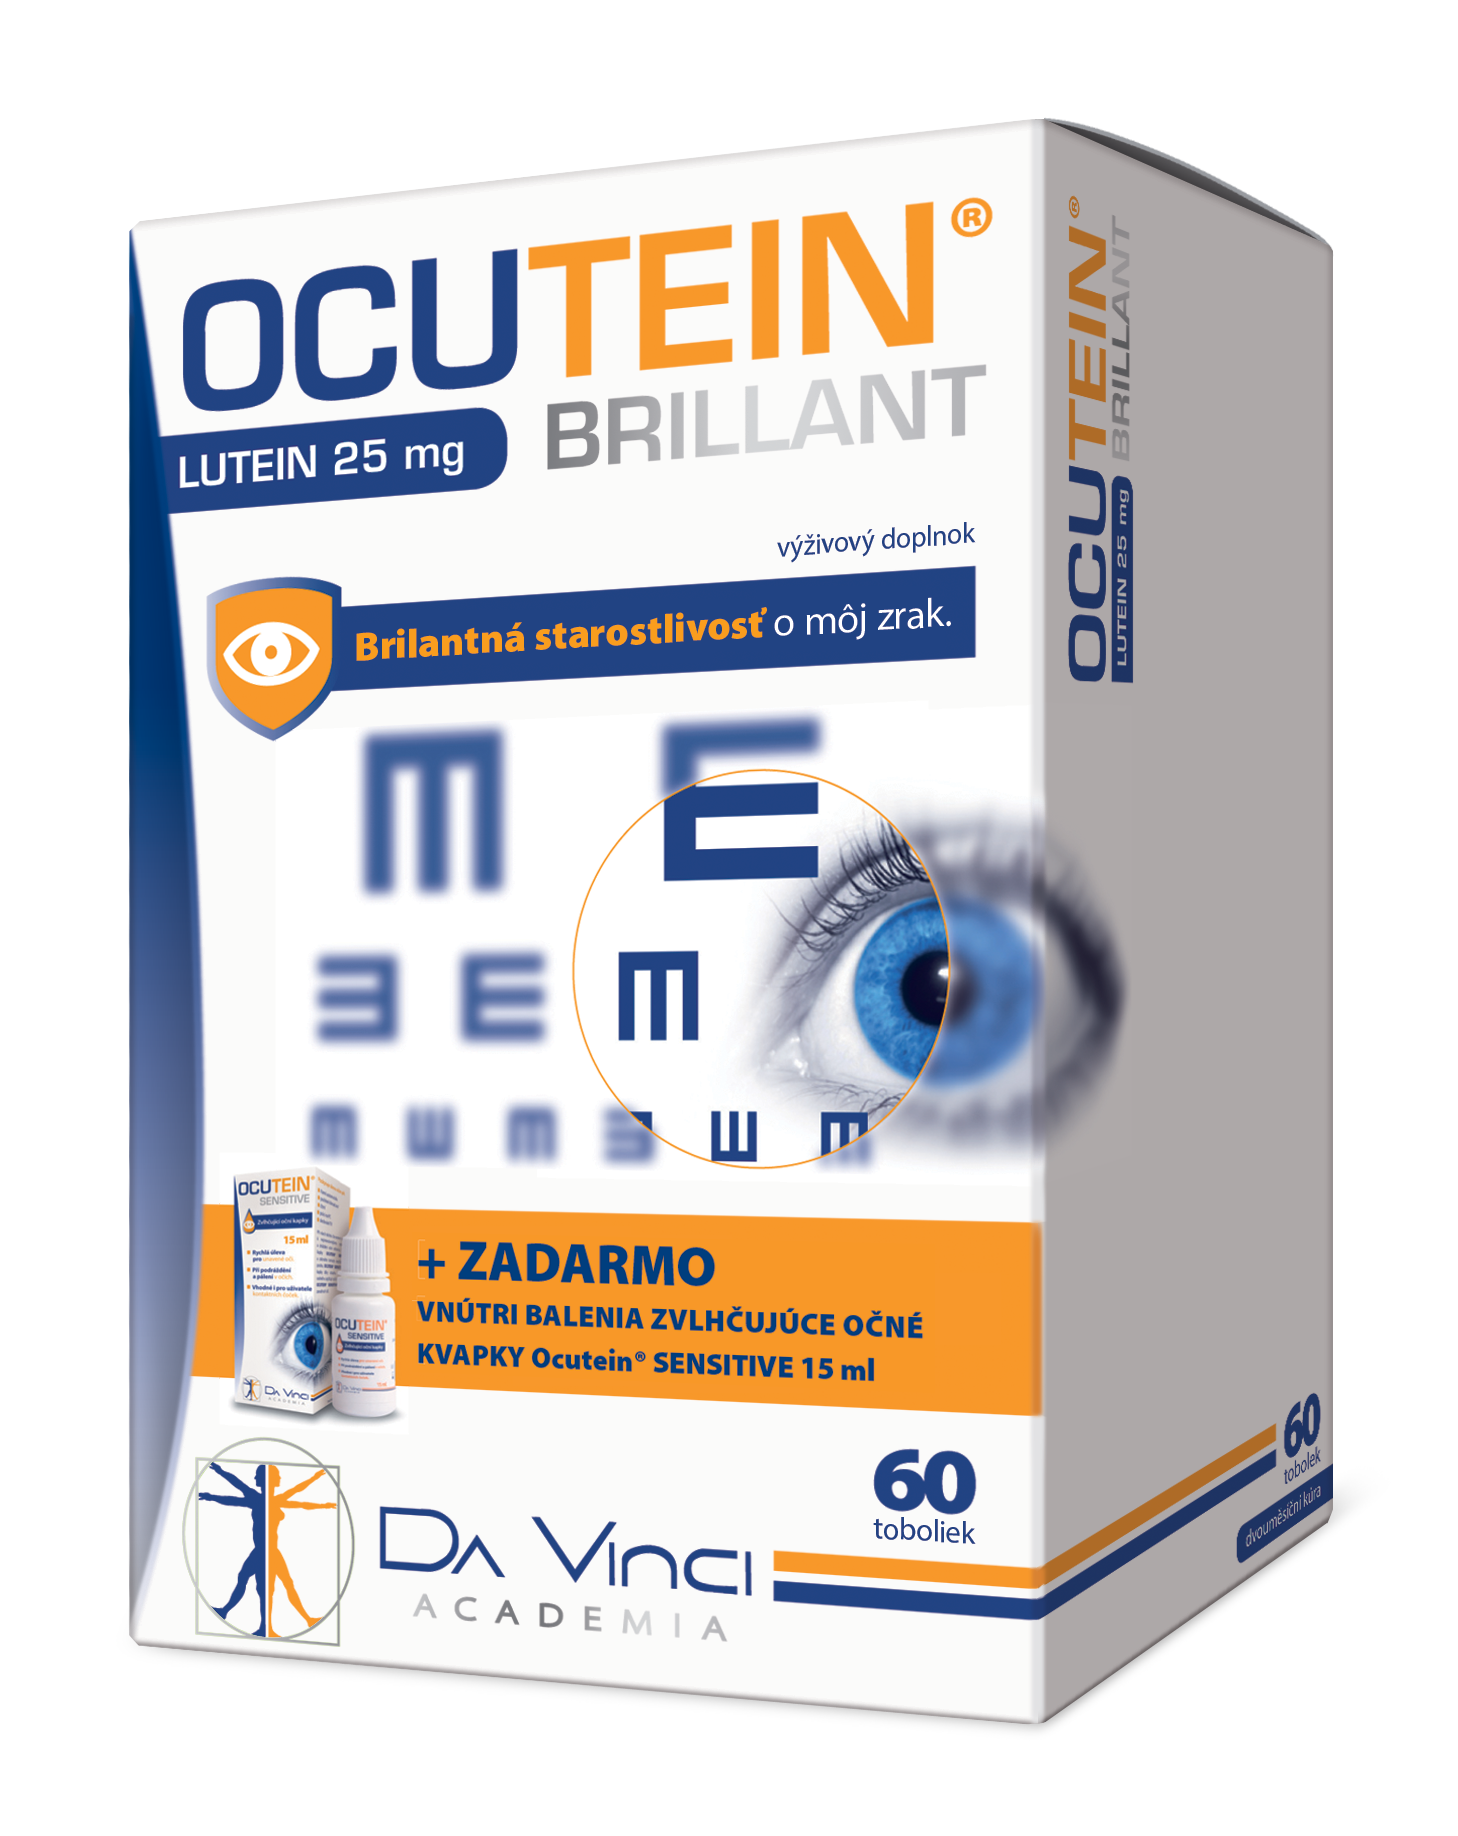 OCUTEIN BRILLANT Luteín 25 mg - DA VINCI cps 60  očné kvapky OCUTEIN Sensitive 15 ml zadarmo